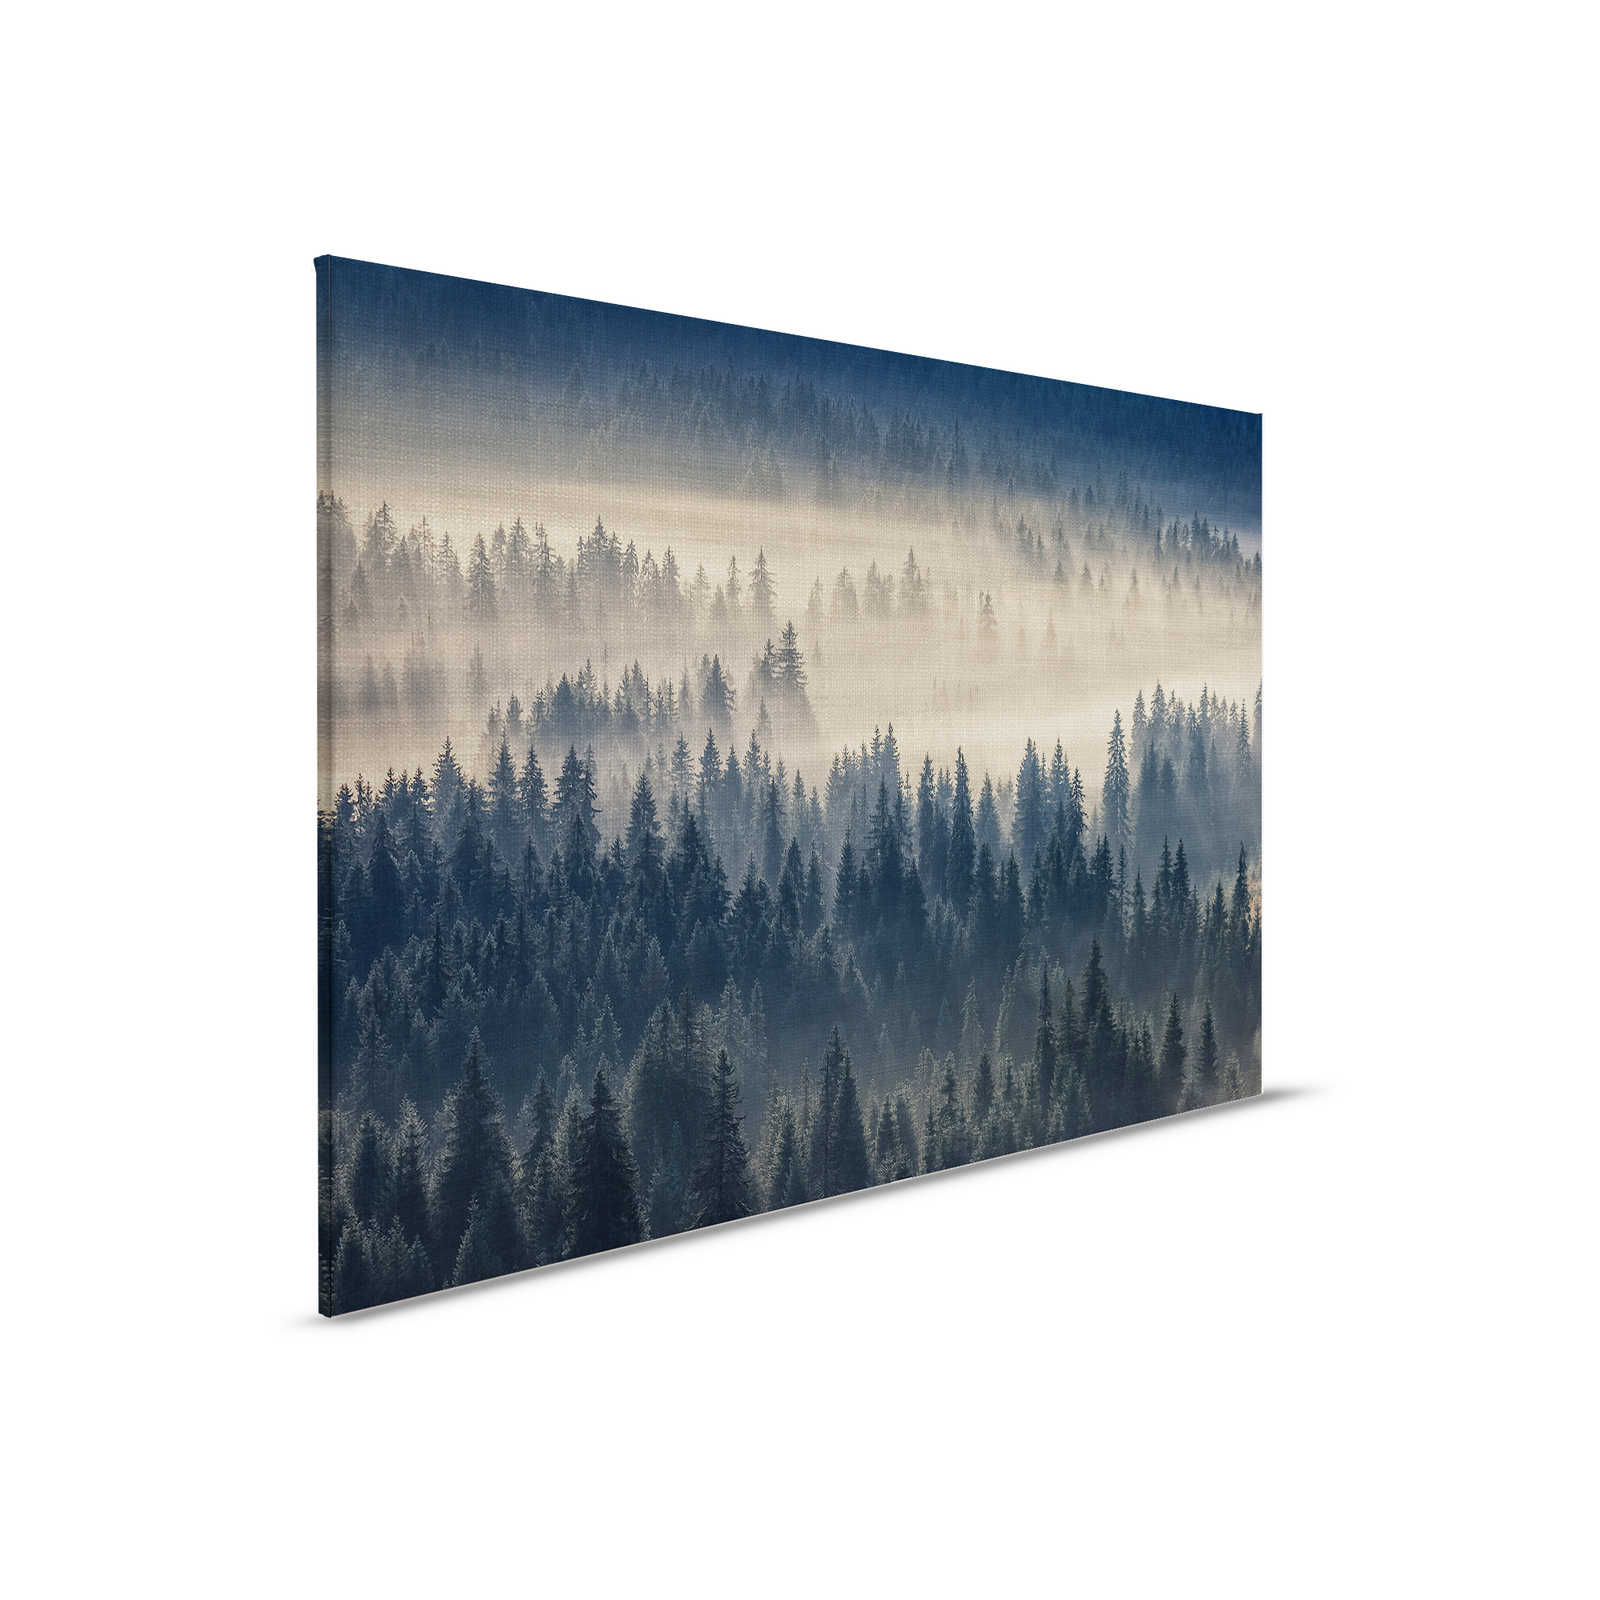         Leinwandbild mit Waldlandschaft auf Leinenstruktur-Optik – 0,90 m x 0,60 m
    